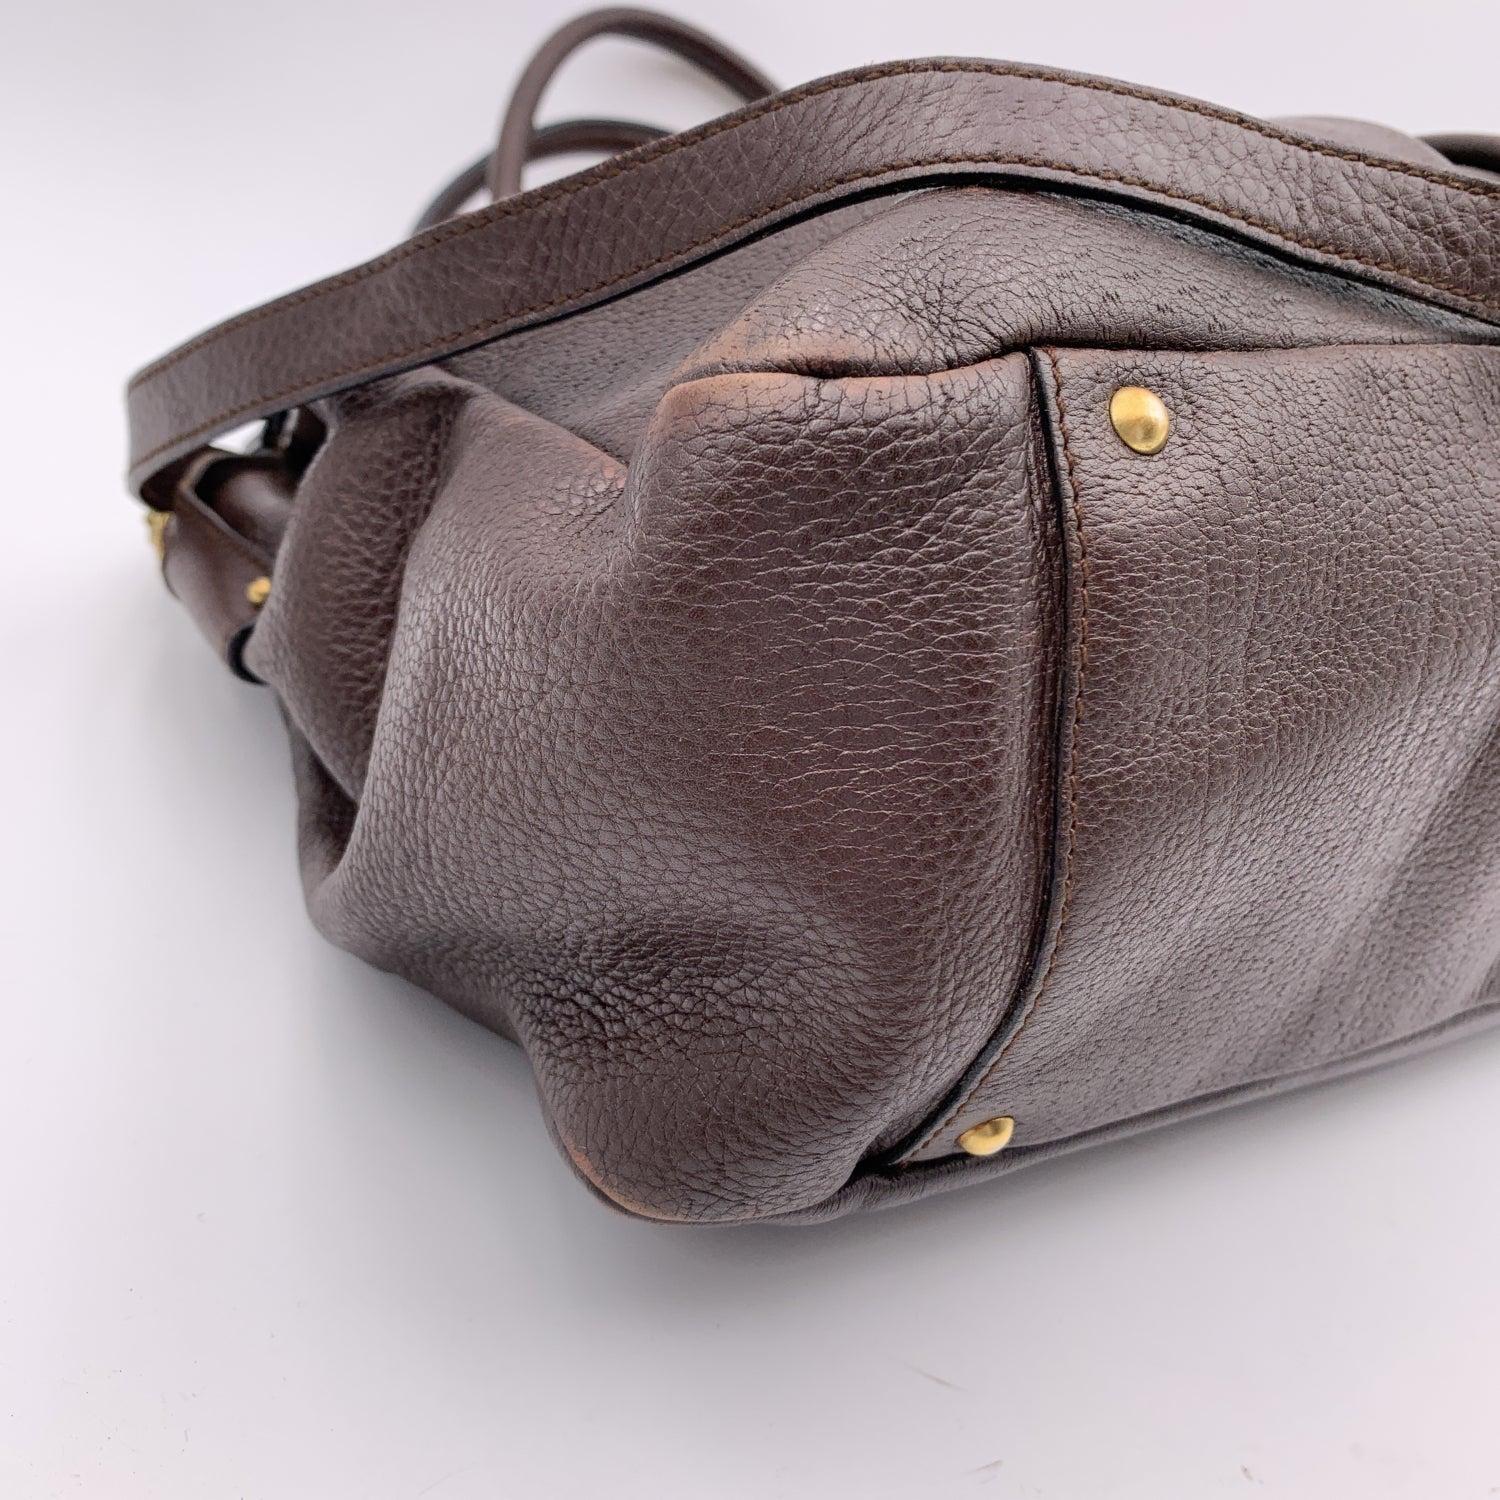 Salvatore Ferragamo Dark Brown Leather Gancini Tote Bag with Strap 4